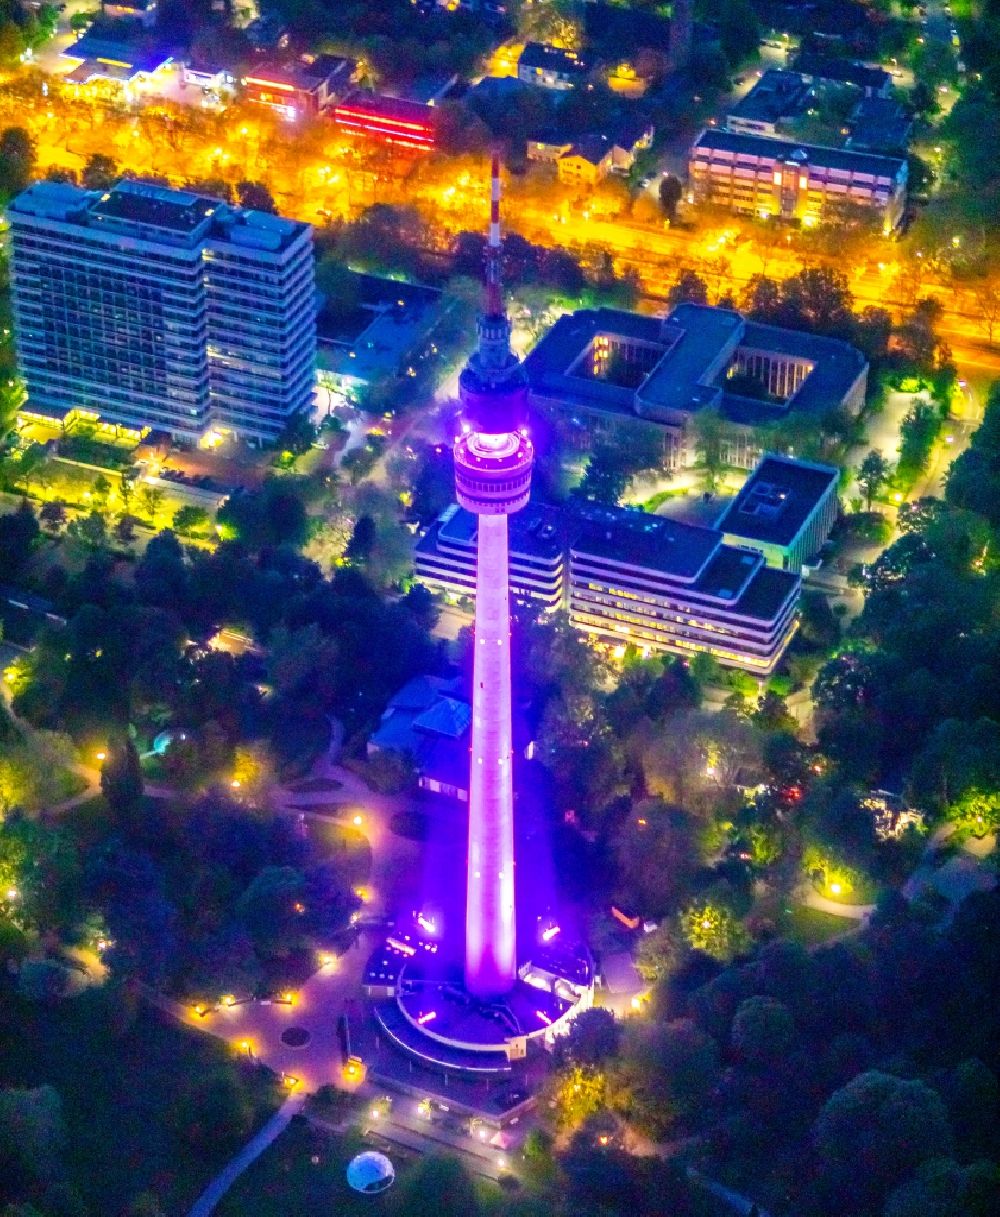 Nacht-Luftaufnahme Dortmund - Nachtluftbild Fernmelde- und Fernsehturm Florian-Turm in Dortmund im Bundesland Nordrhein-Westfalen, Deutschland